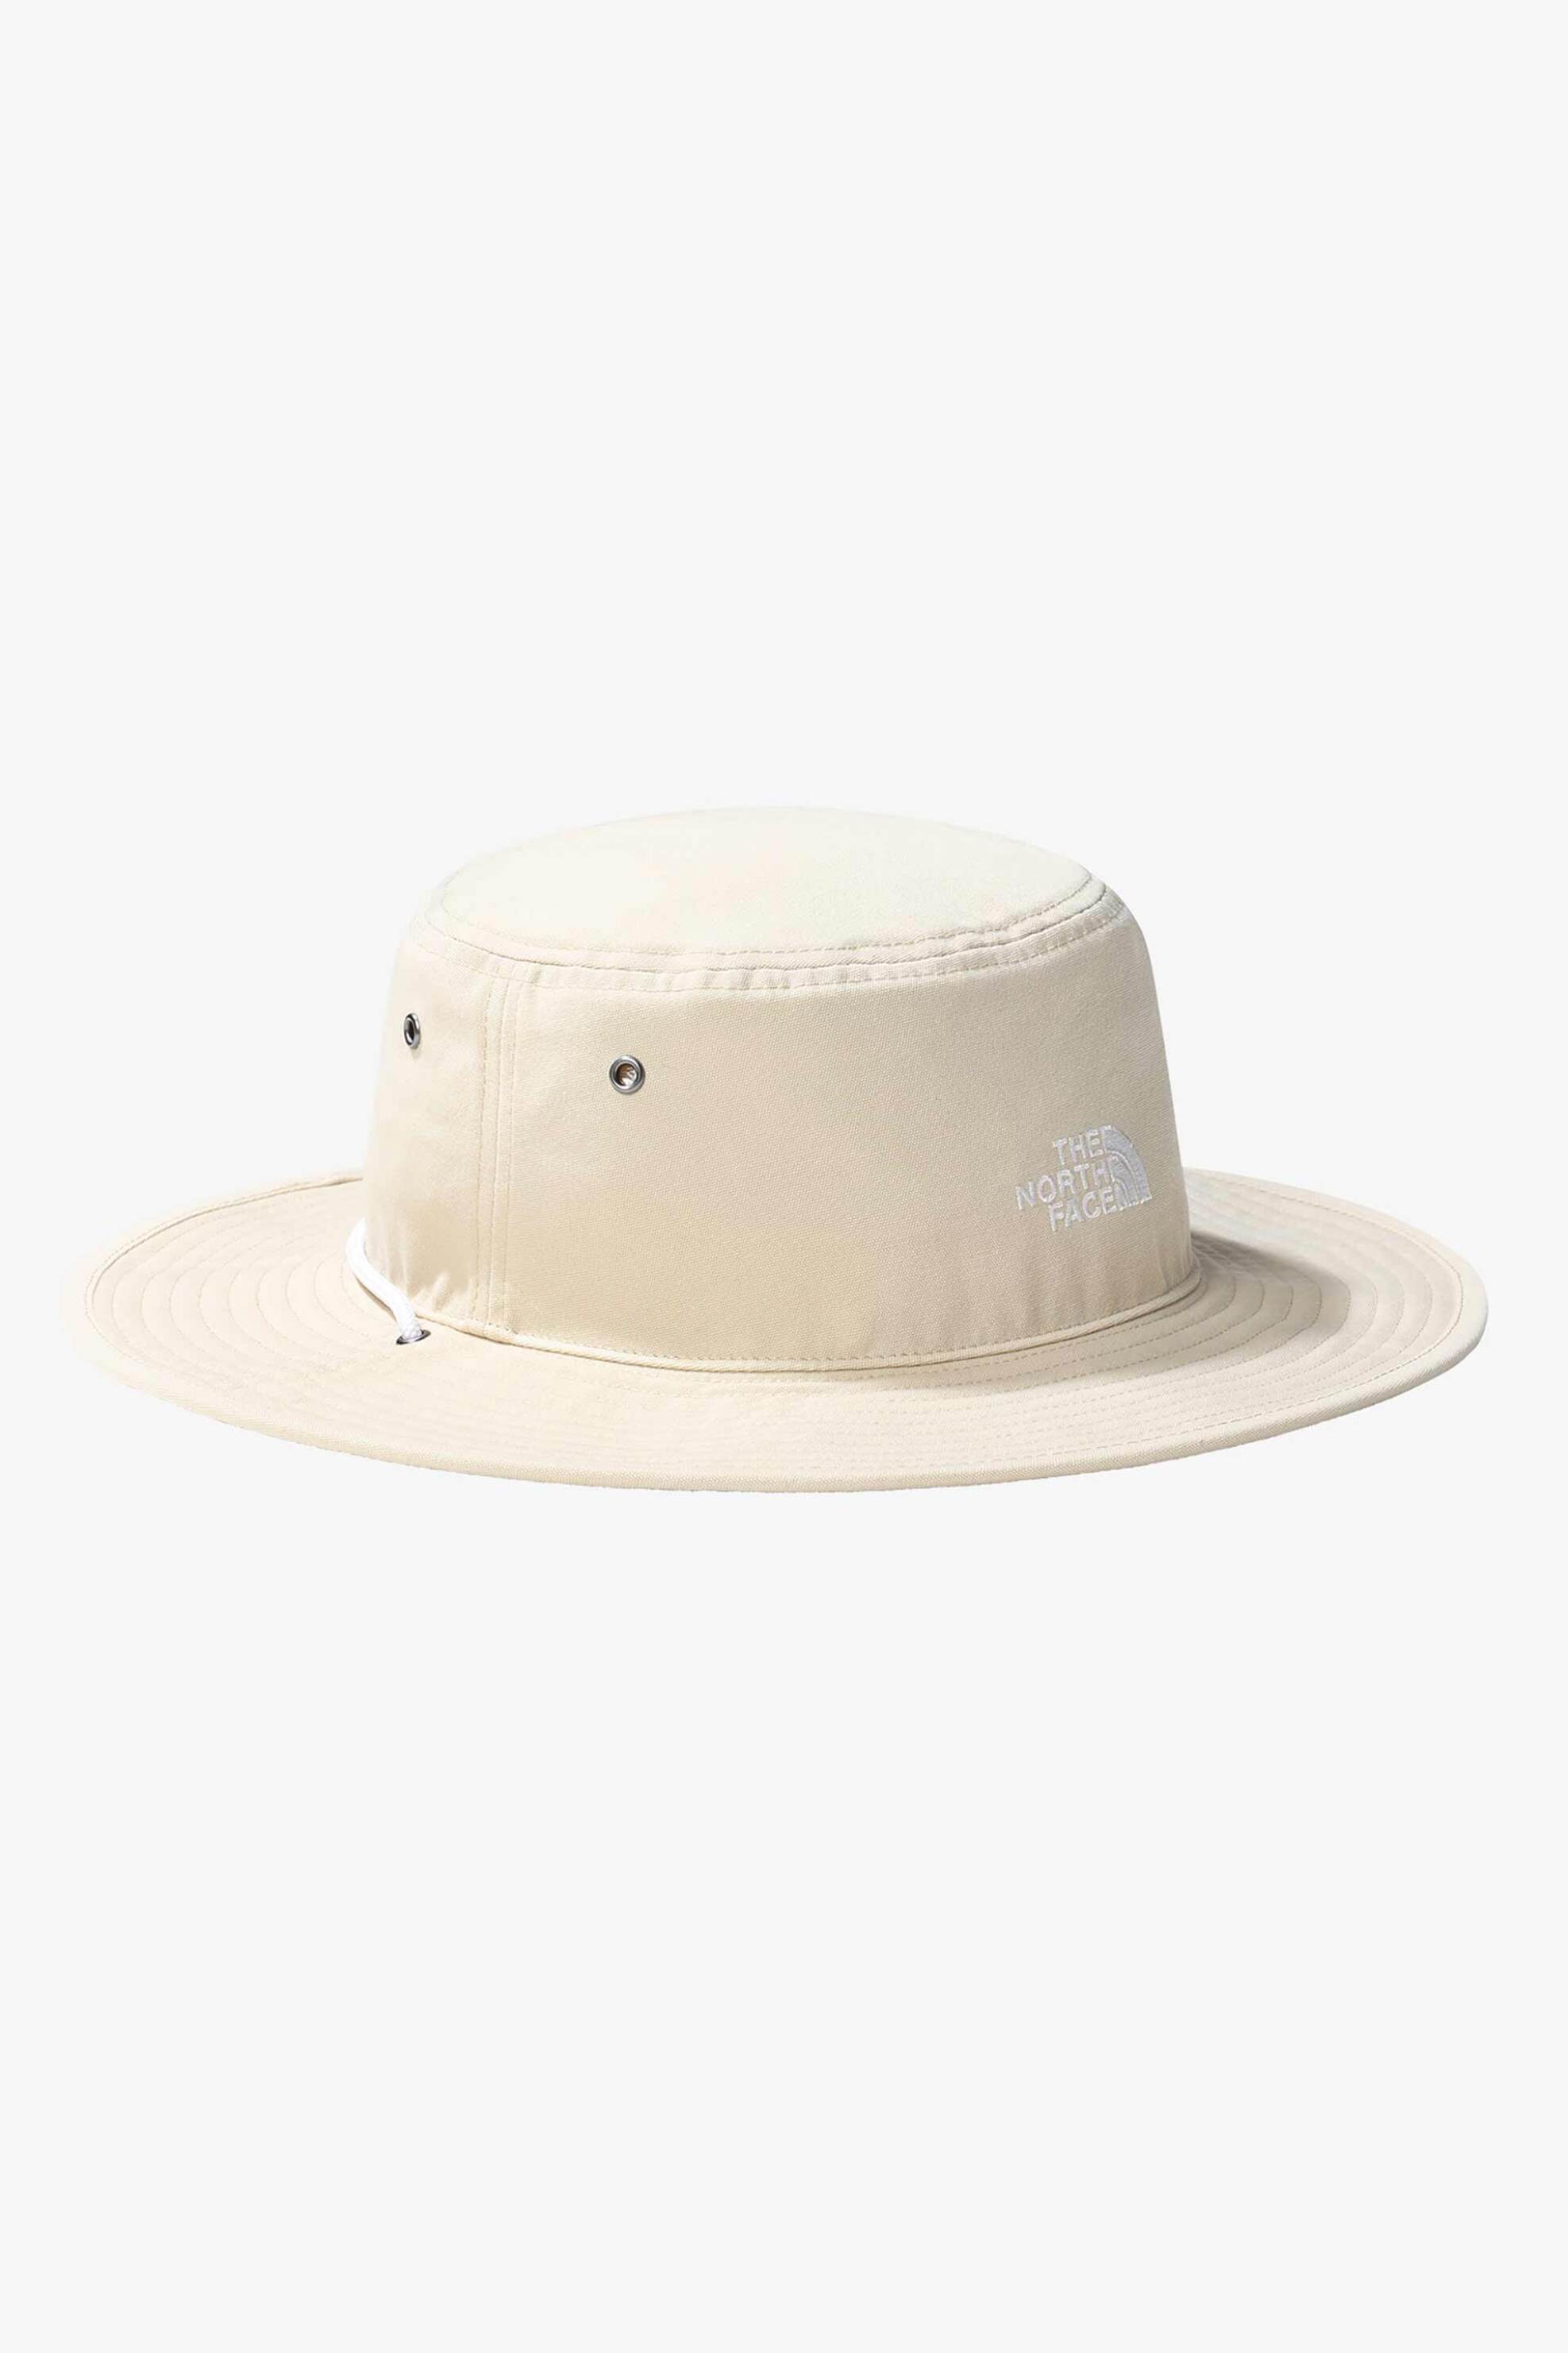 Ανδρική Μόδα > Ανδρικά Αξεσουάρ > Ανδρικά Καπέλα & Σκούφοι The North Face unisex καπέλο με κεντημένο λογότυπο και ρυθμιζόμενο κορδόνι "Recycled 66" - NF0A5FX33X41 Κρέμ